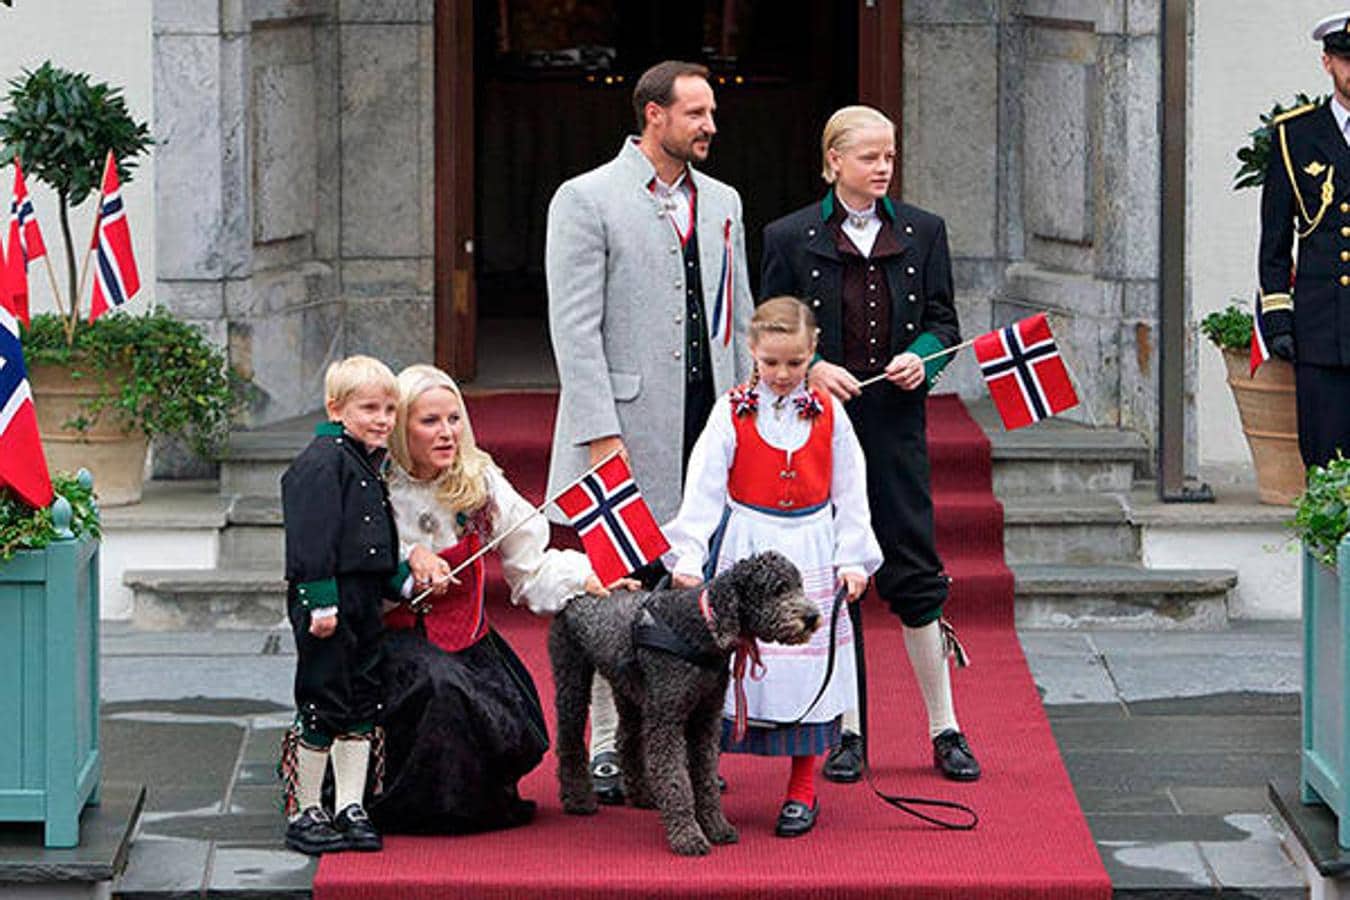 Príncipe y la Princesa de Noruega Haakon y Mette-Marit posaron con sus hijos, Ingrid Alexandra, Sverre Magnus y Marius Borg Høiby, fruto de su primer matrimonio, y el perro de la familia, en el Crown Prince